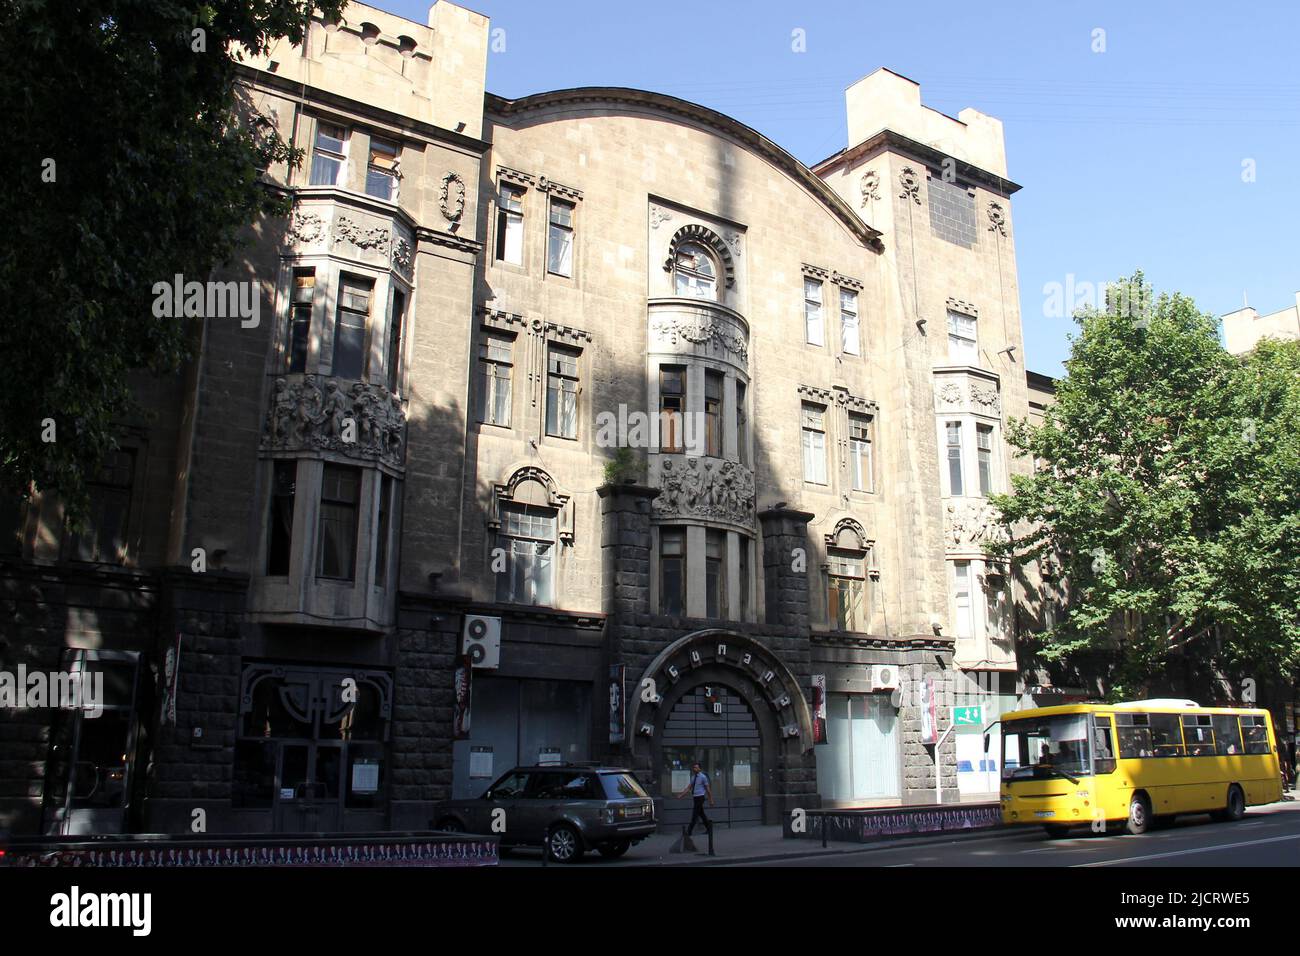 Théâtre Shalikashvili, dans un bâtiment Art Nouveau, 1900s ancien manoir de la ville, à l'avenue Shota Rustaveli, Tbilissi, Géorgie Banque D'Images